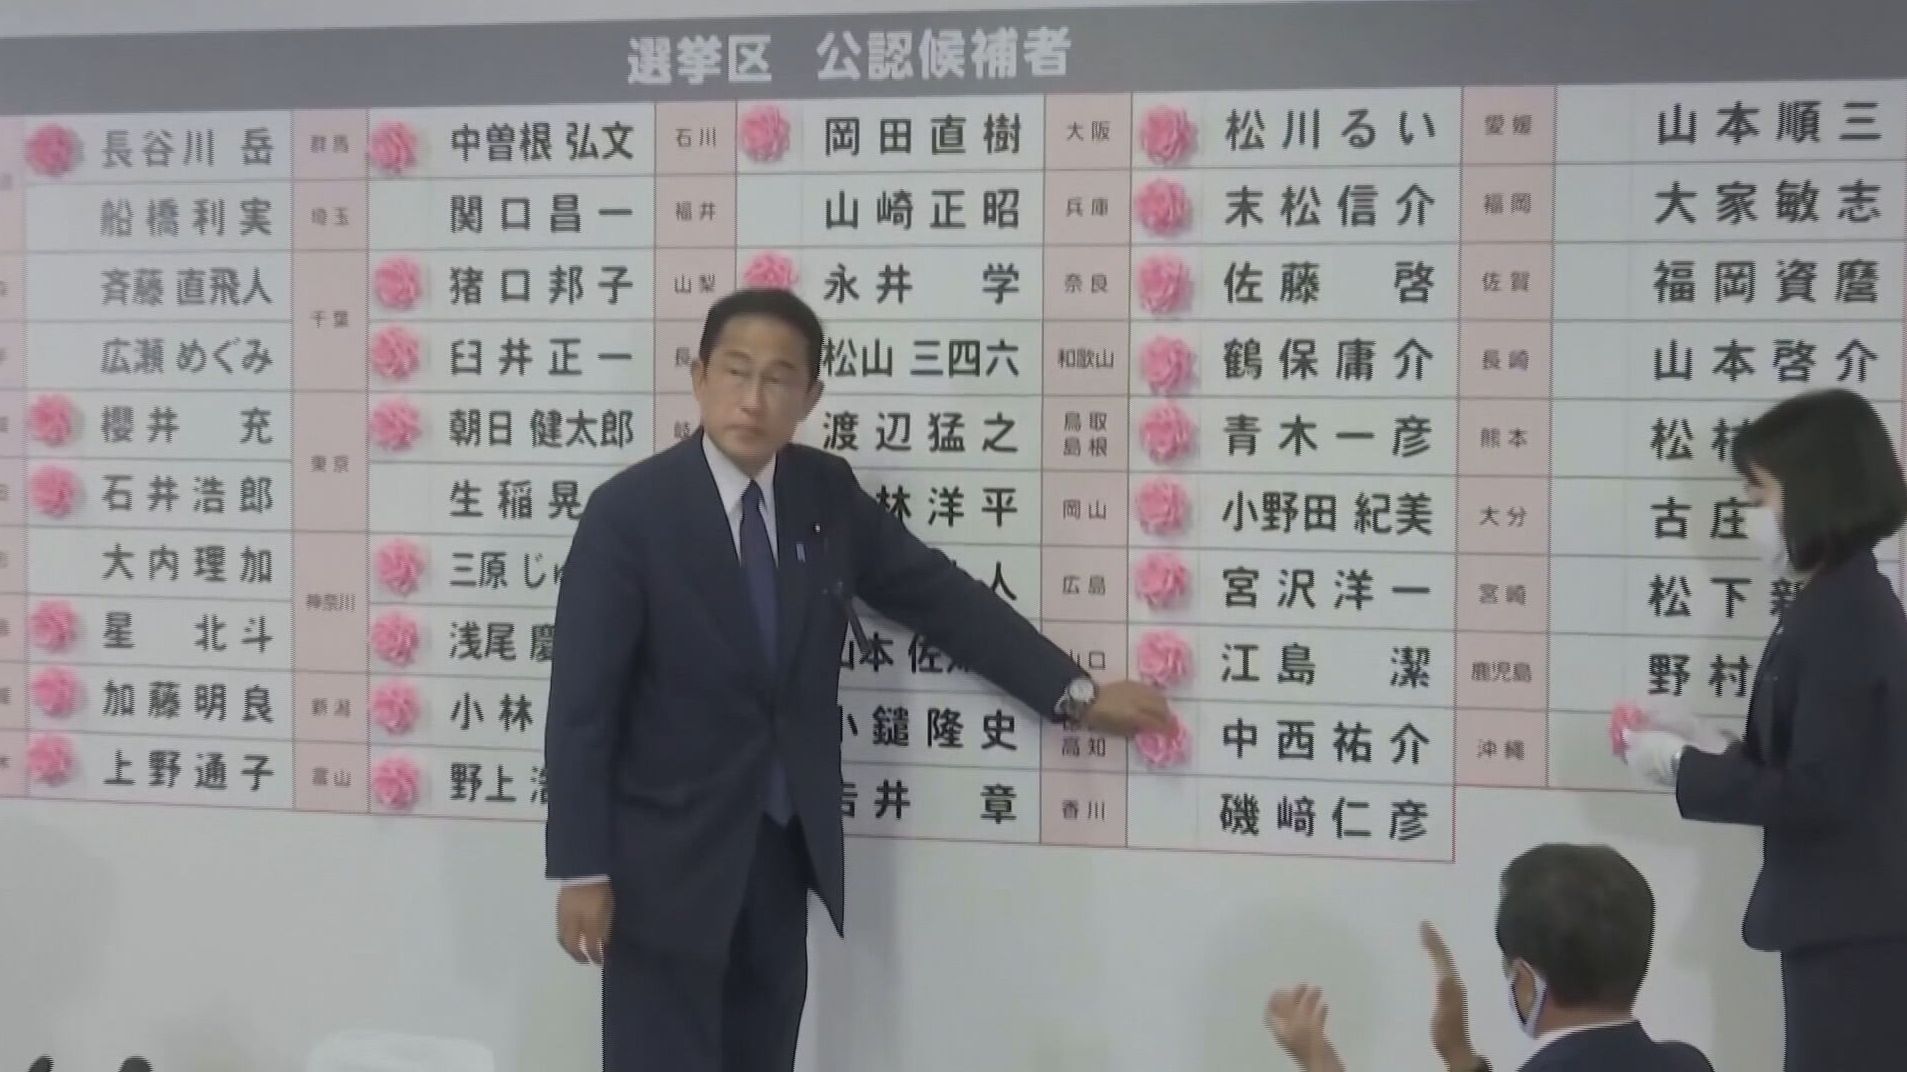 Shinzo Abe consigue su última victoria electoral en Japón días después de su asesinato